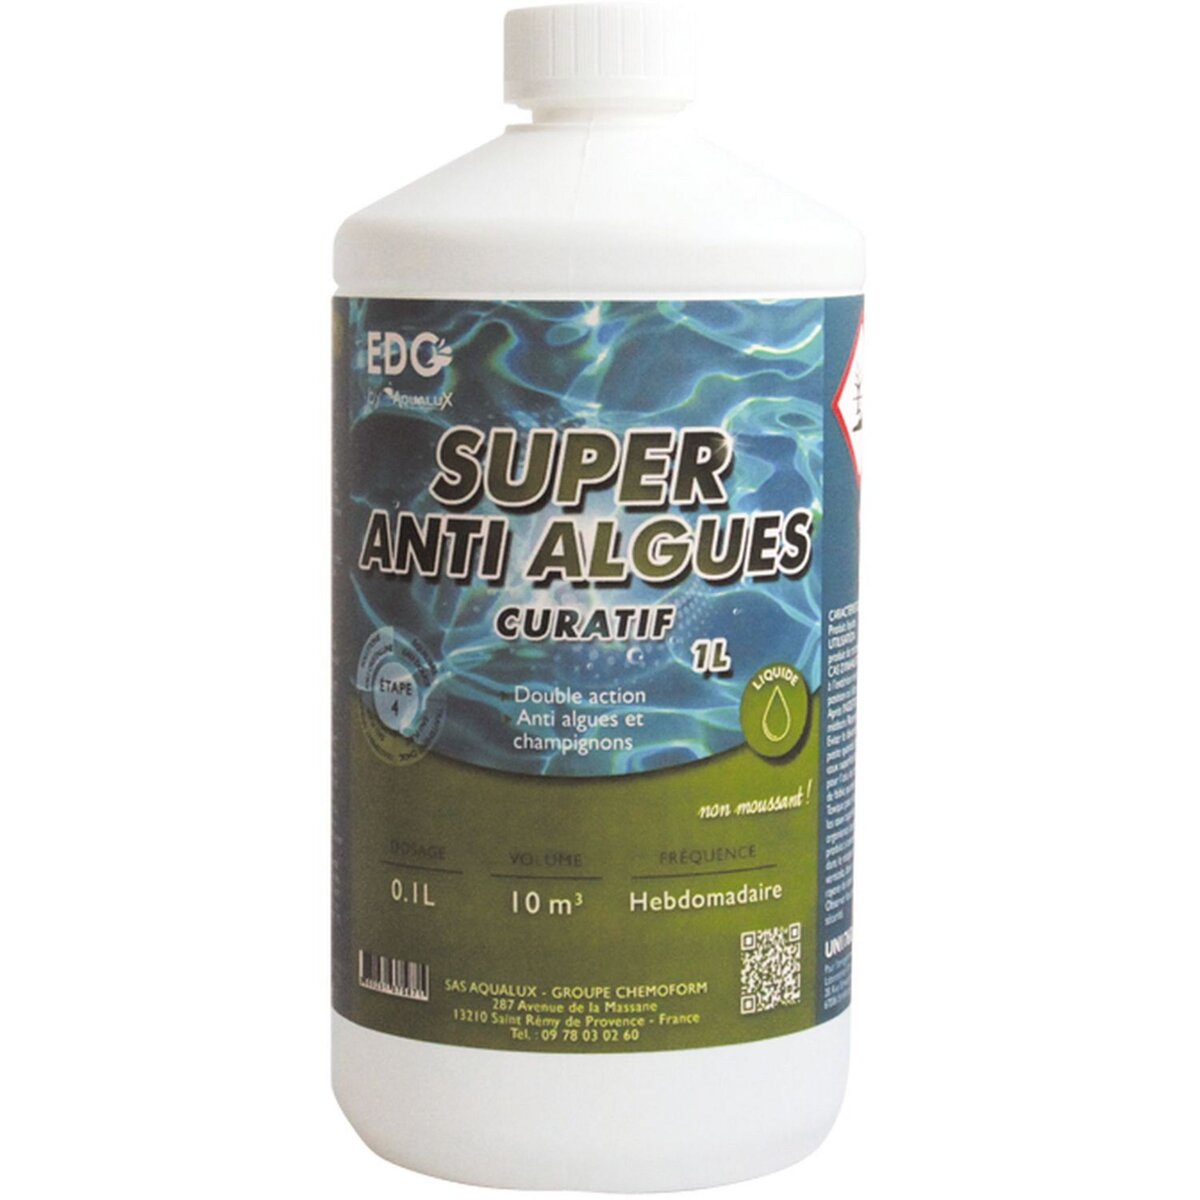 EDG By Aqualux Super Anti-Algues curatif - Bidon 1L